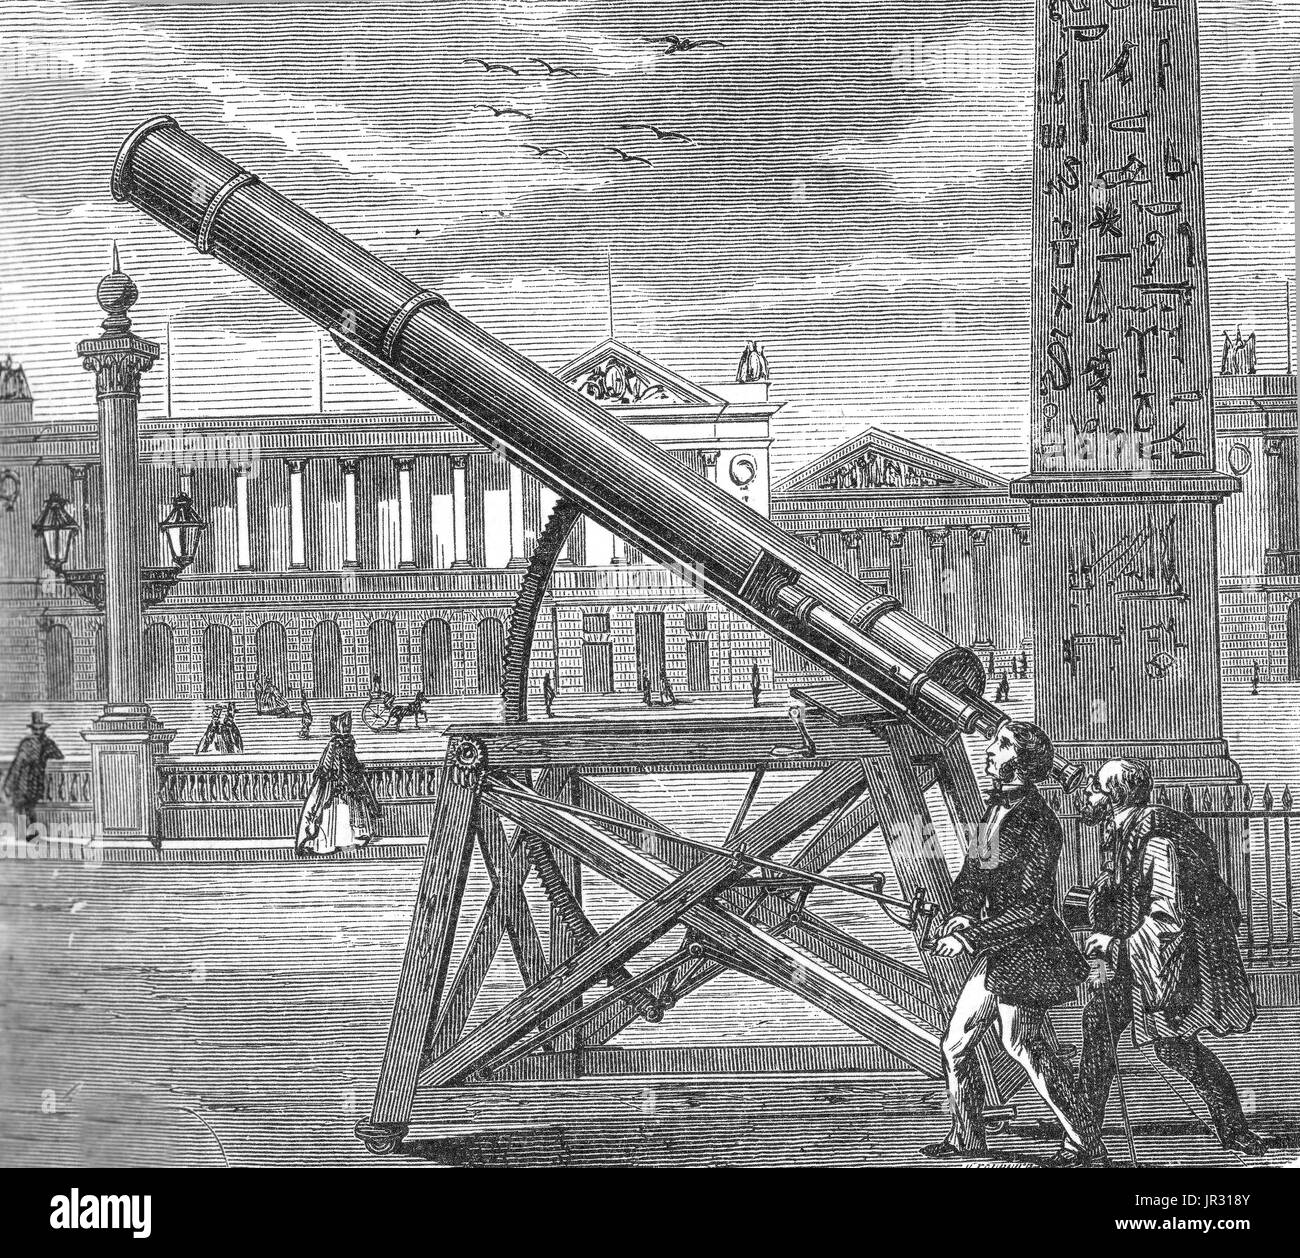 Un télescope est un télescope optique qui utilise un seul ou une  combinaison de panneaux miroirs qui reflètent la lumière et former une  image. Le télescope a été inventé au 17ème siècle